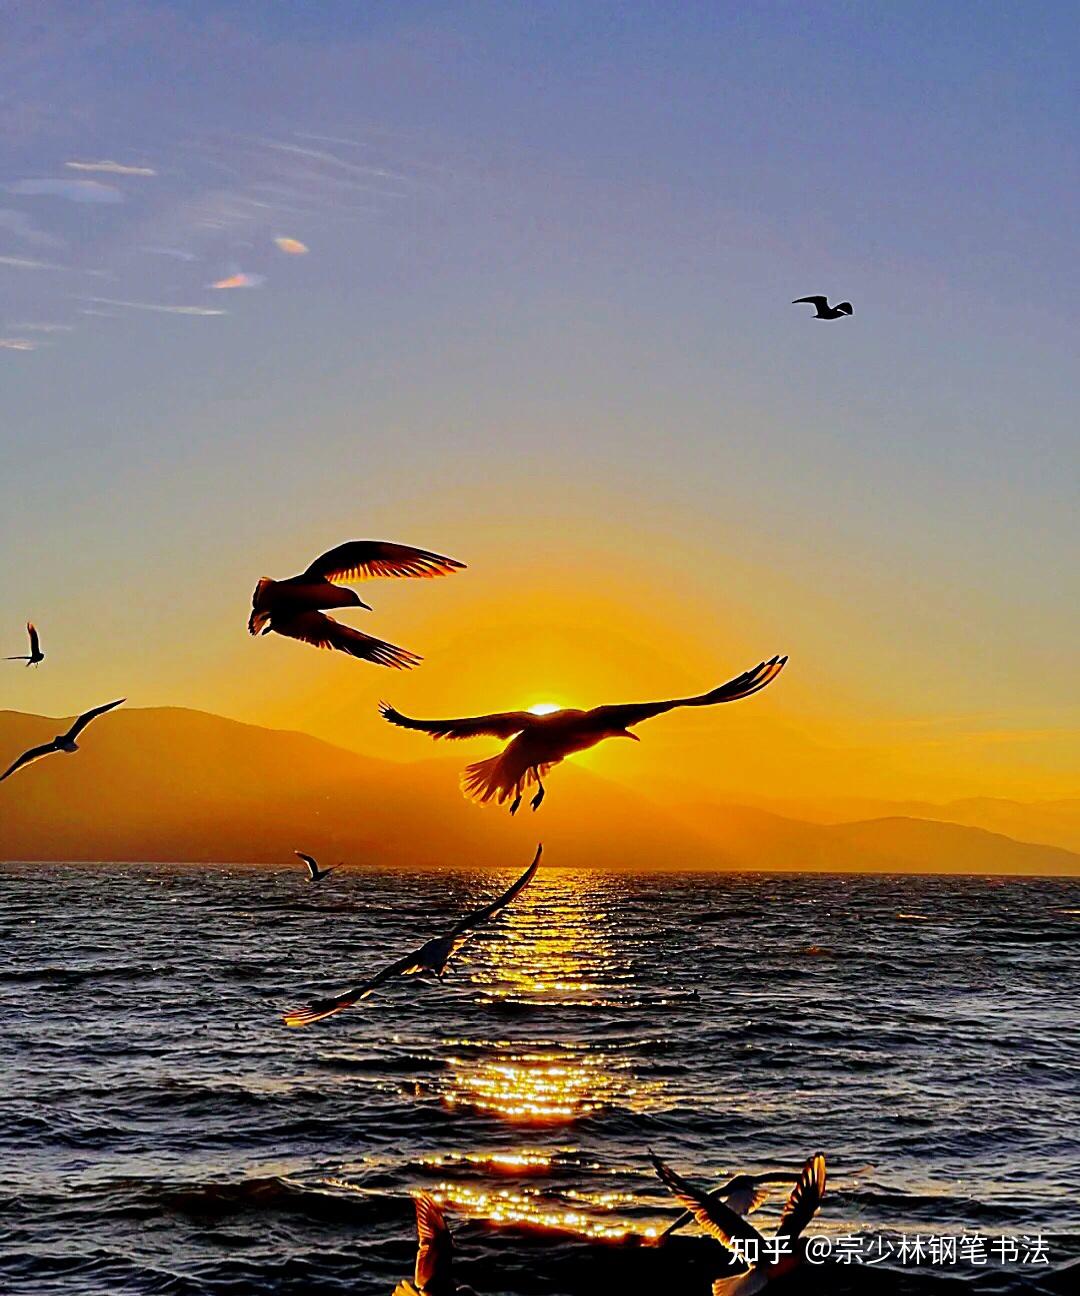 漫步海边看日出,看海鸥飞翔,画面美爆了! 